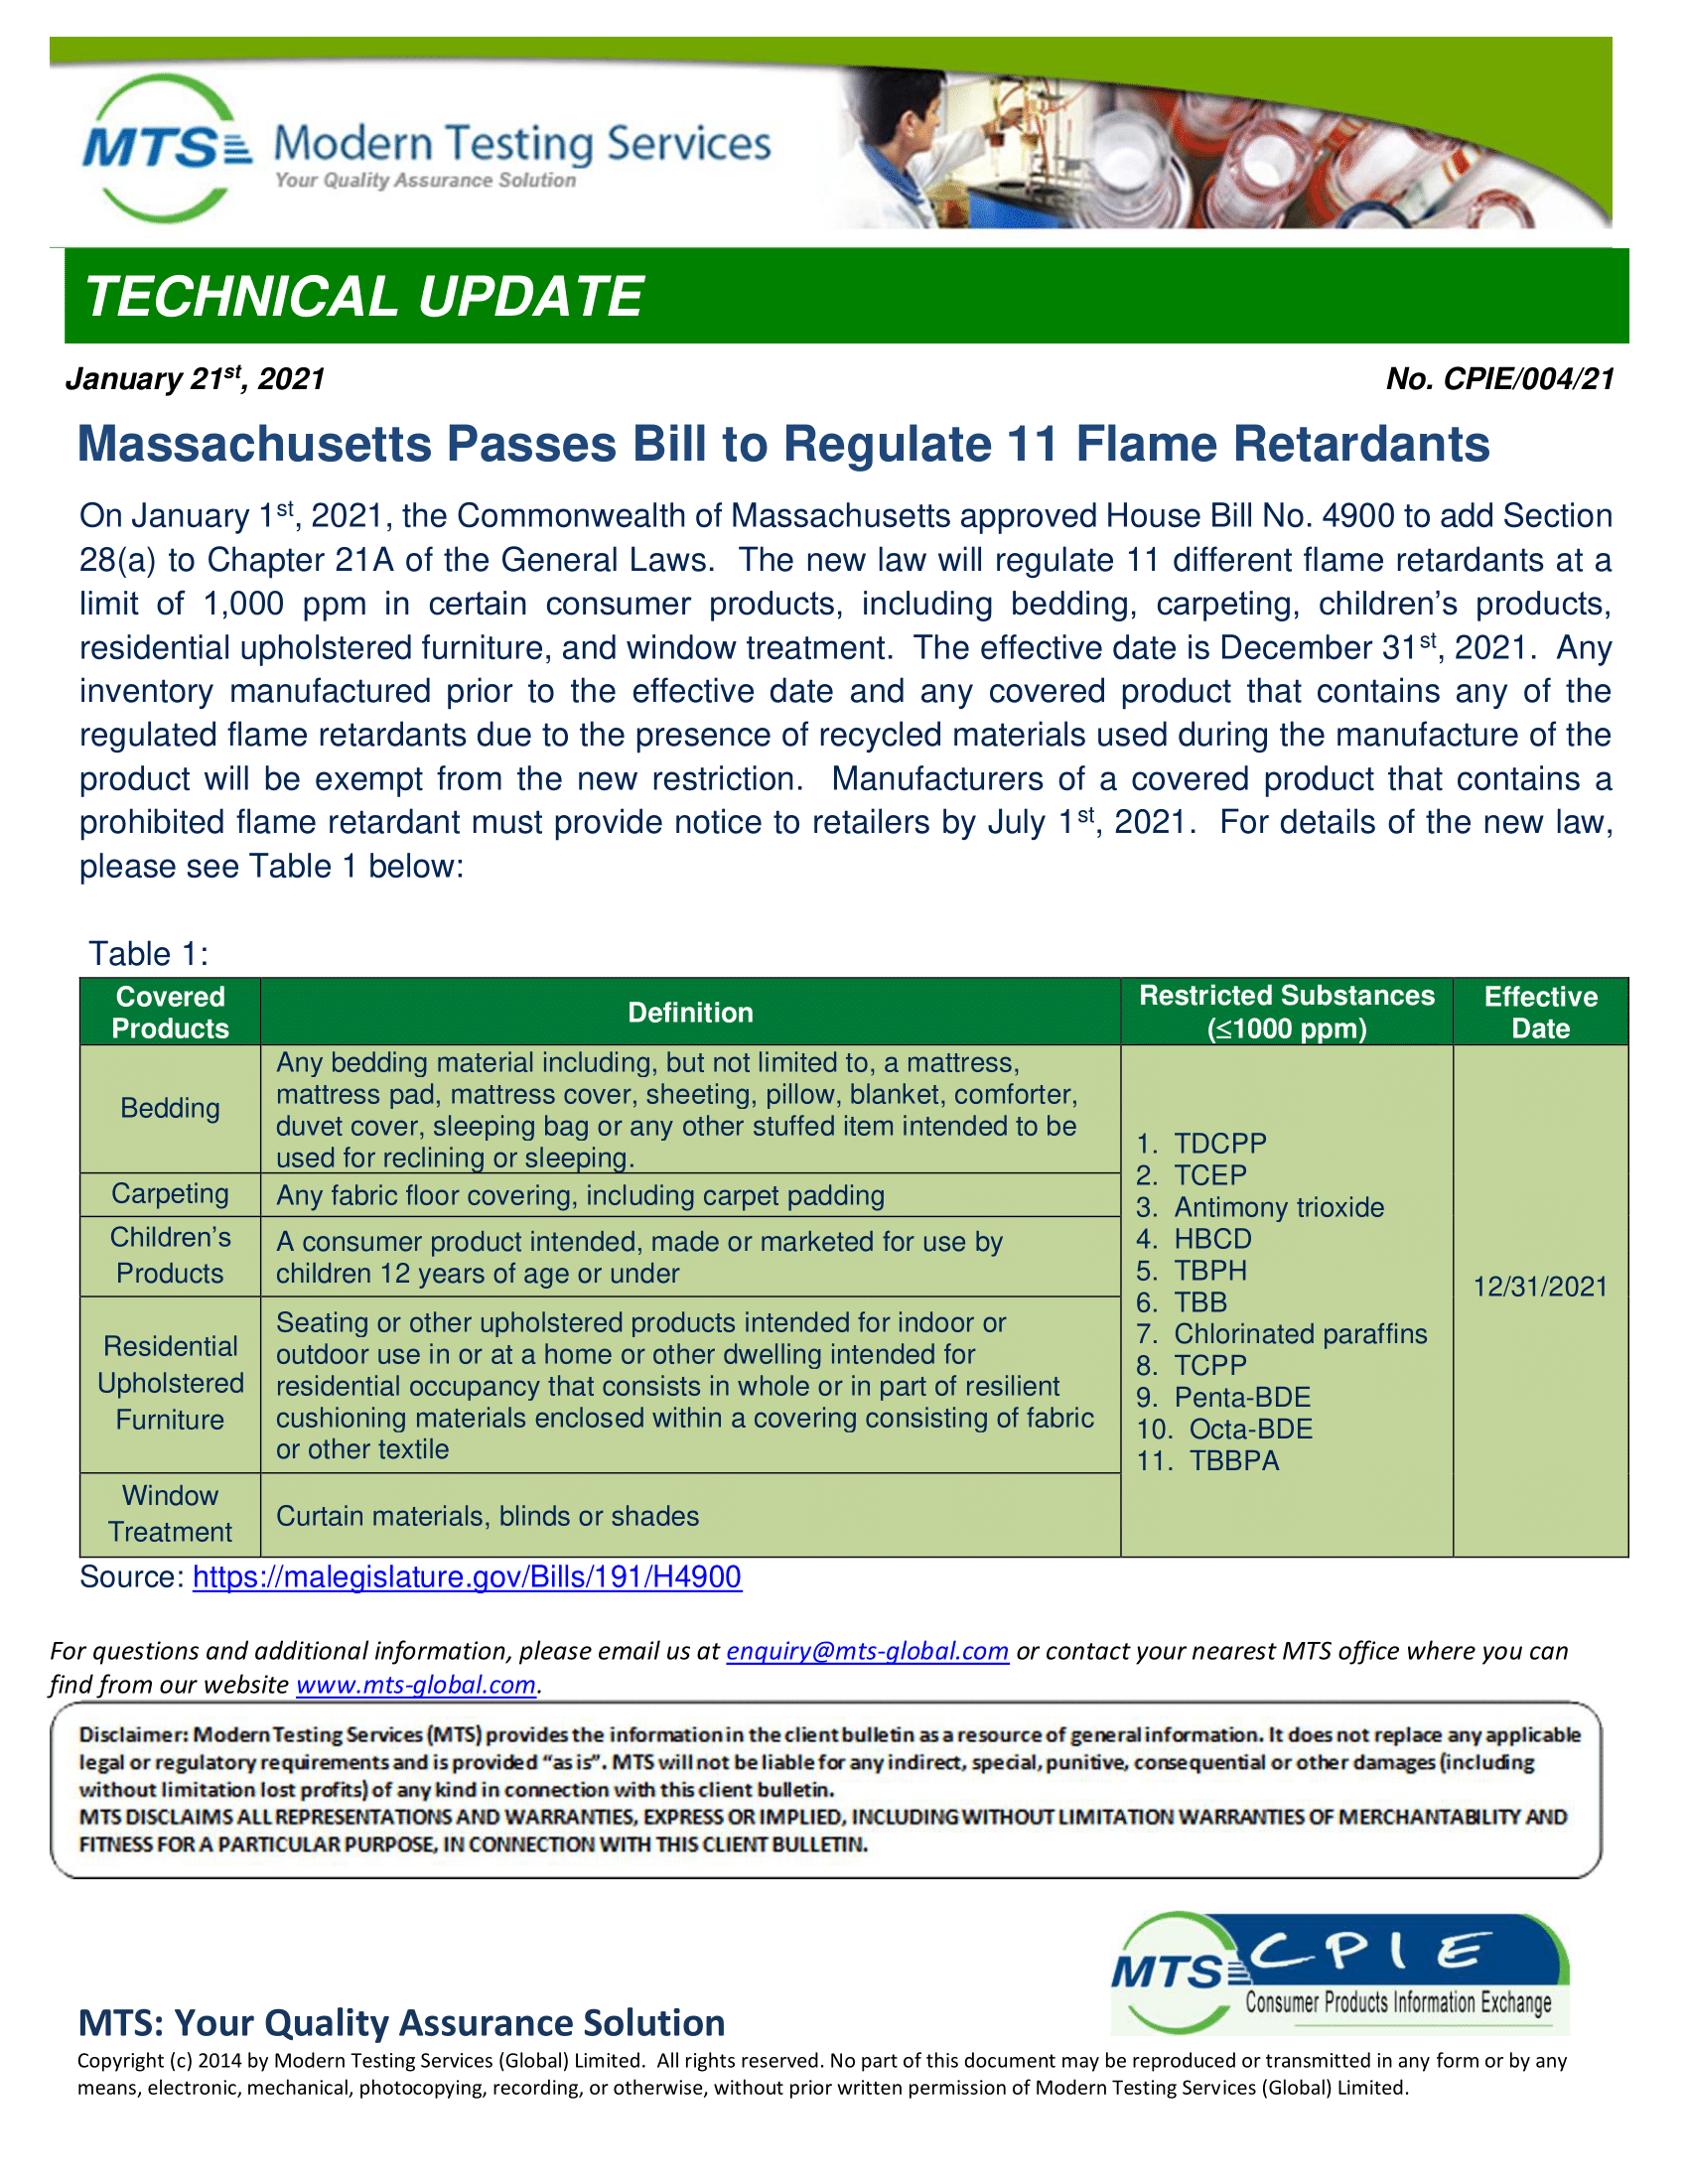 CPIE-004-21 Massachusetts Passes Bill to Regulate 11 Flame Retardants -1